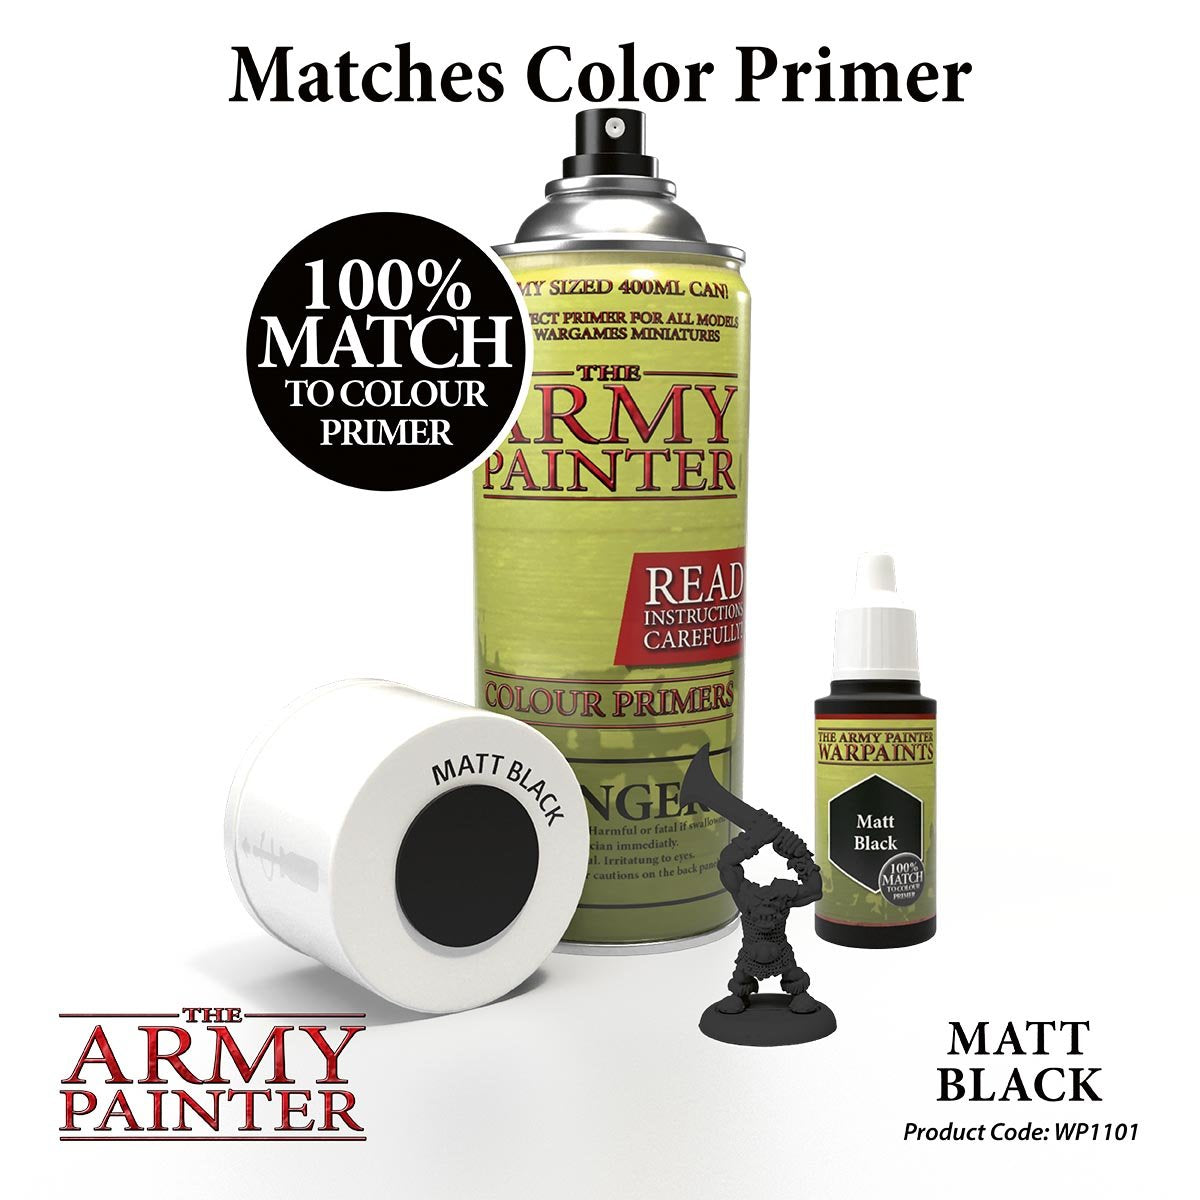 The Army Painter Warpaints WP1101 Matt Black Acrylic Paint 18ml bottle